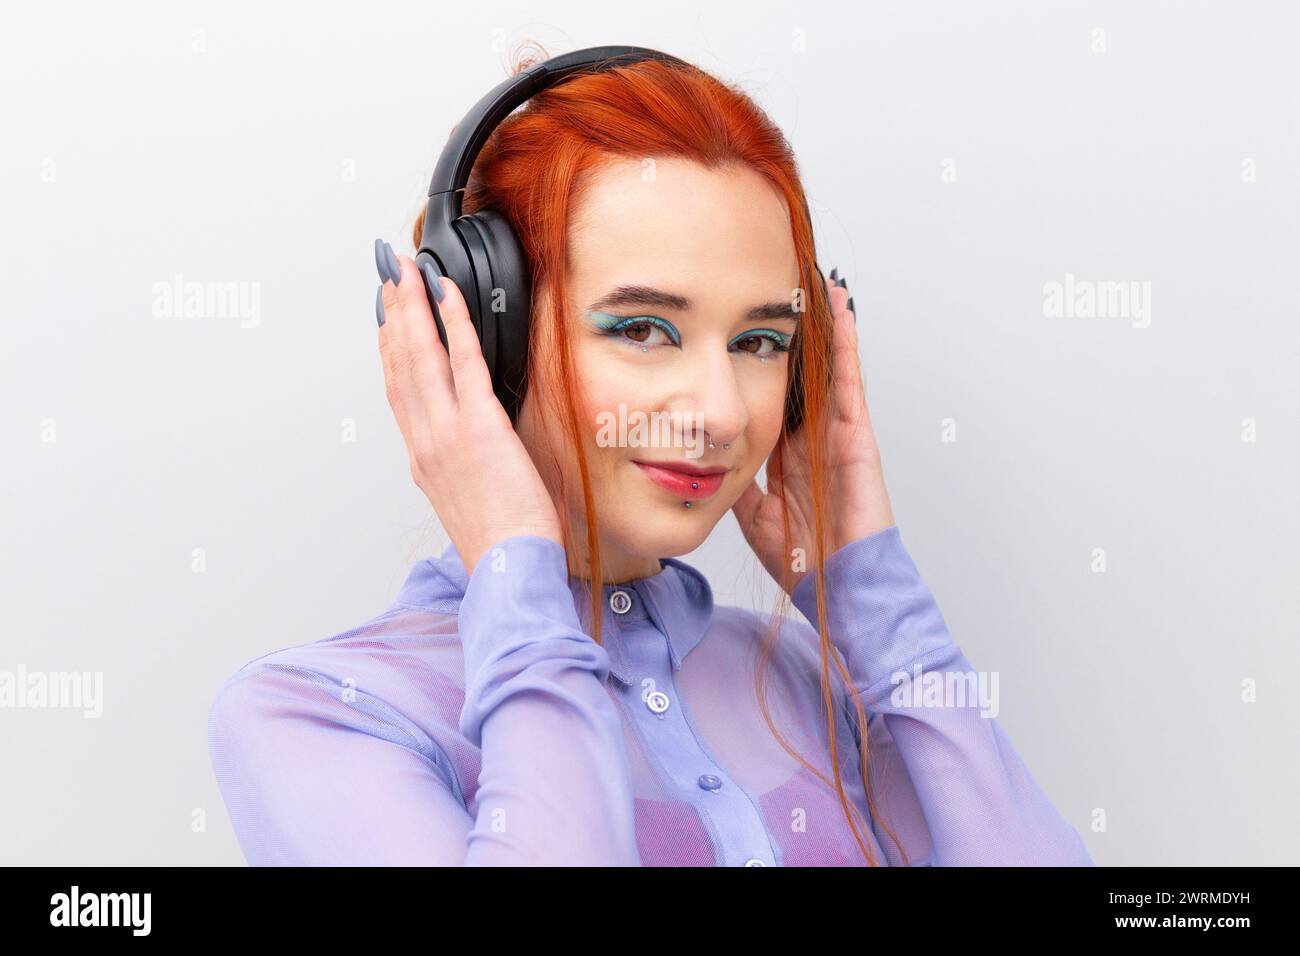 Una giovane donna d'affari adulta sicura di sé, con i capelli rossi e un piercing sul labbro inferiore, ascolta la musica con le cuffie guardando la fotocamera in piedi su una W bianca Foto Stock